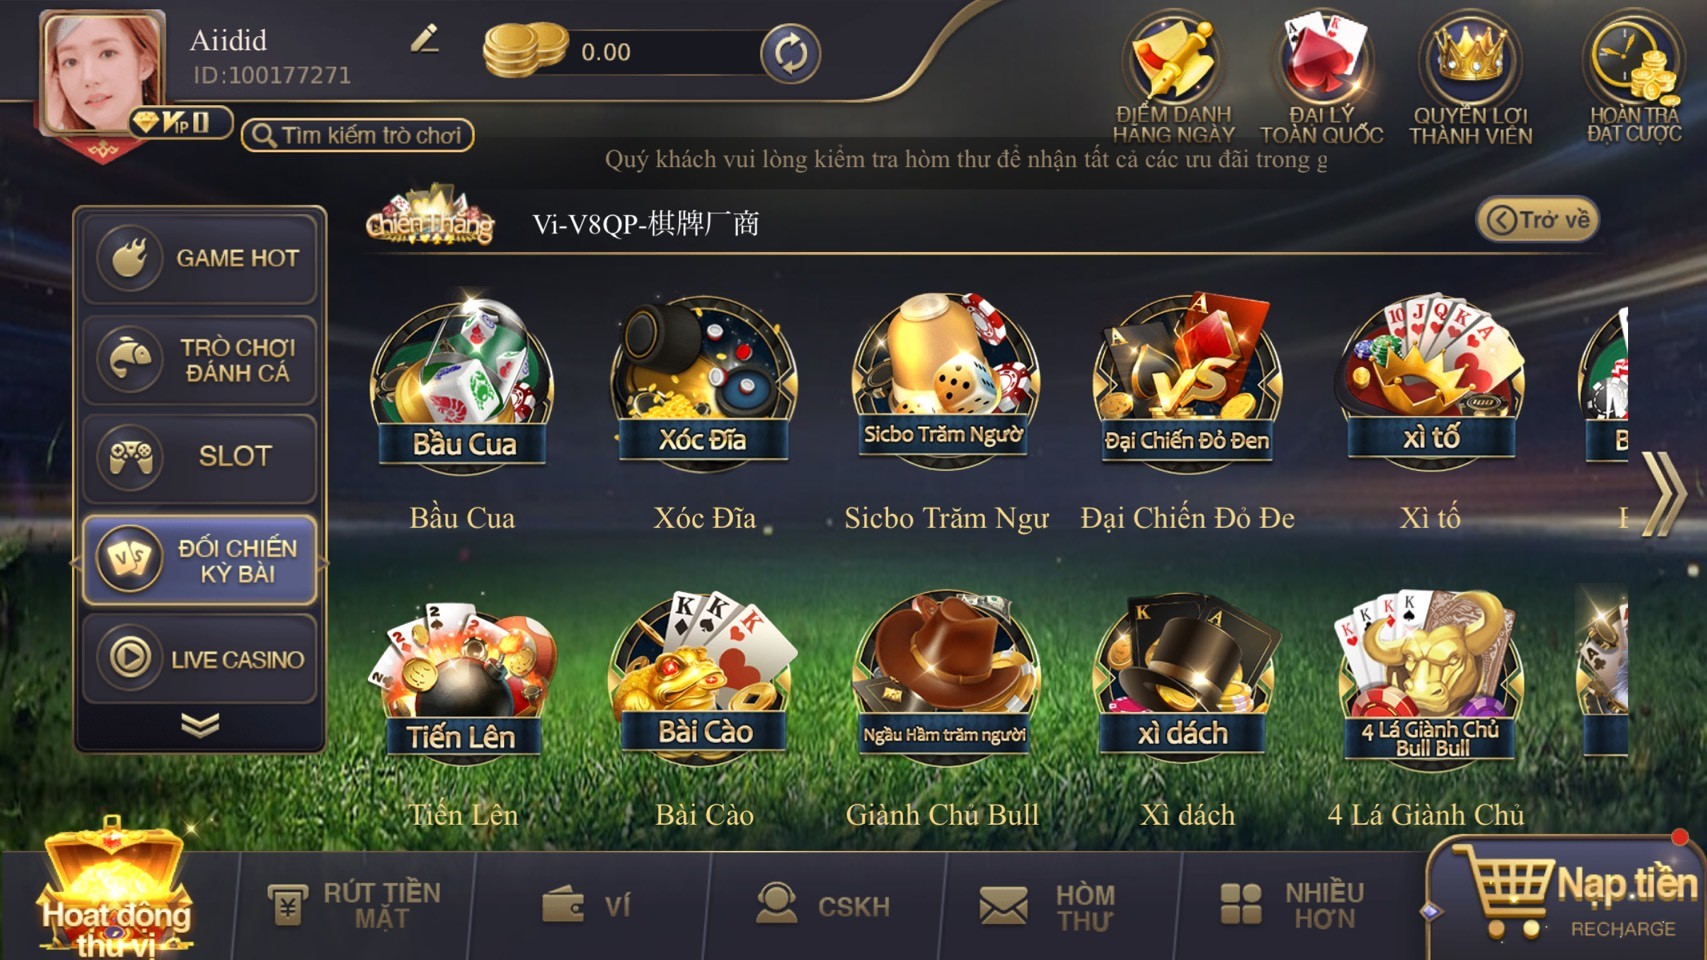 Cfun - Cổng game đổi thưởng trực tuyến quay hũ uy tín - Ảnh 2